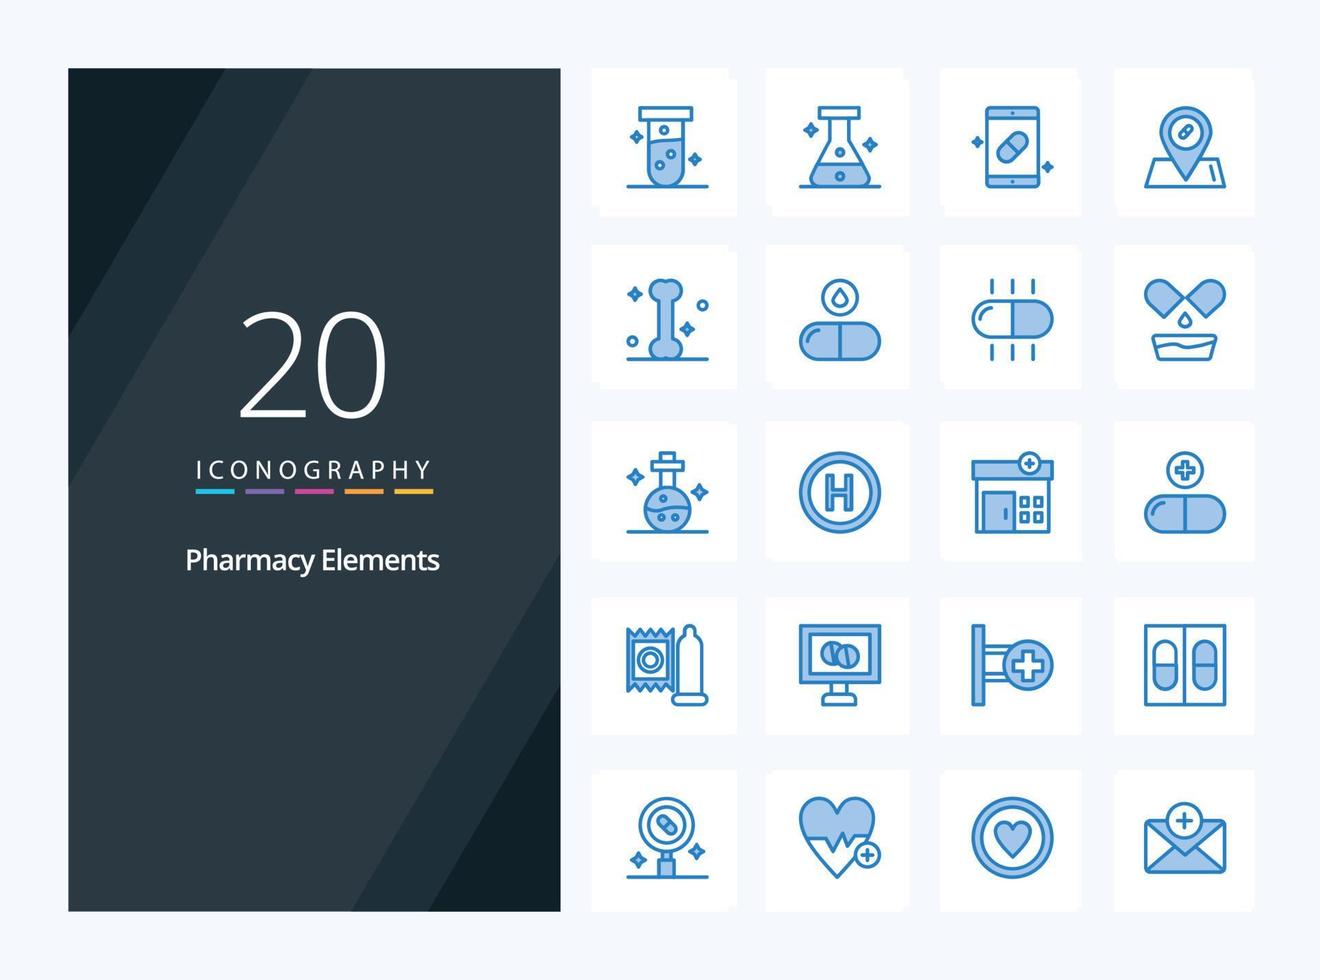 20 éléments de pharmacie icône de couleur bleue pour la présentation vecteur